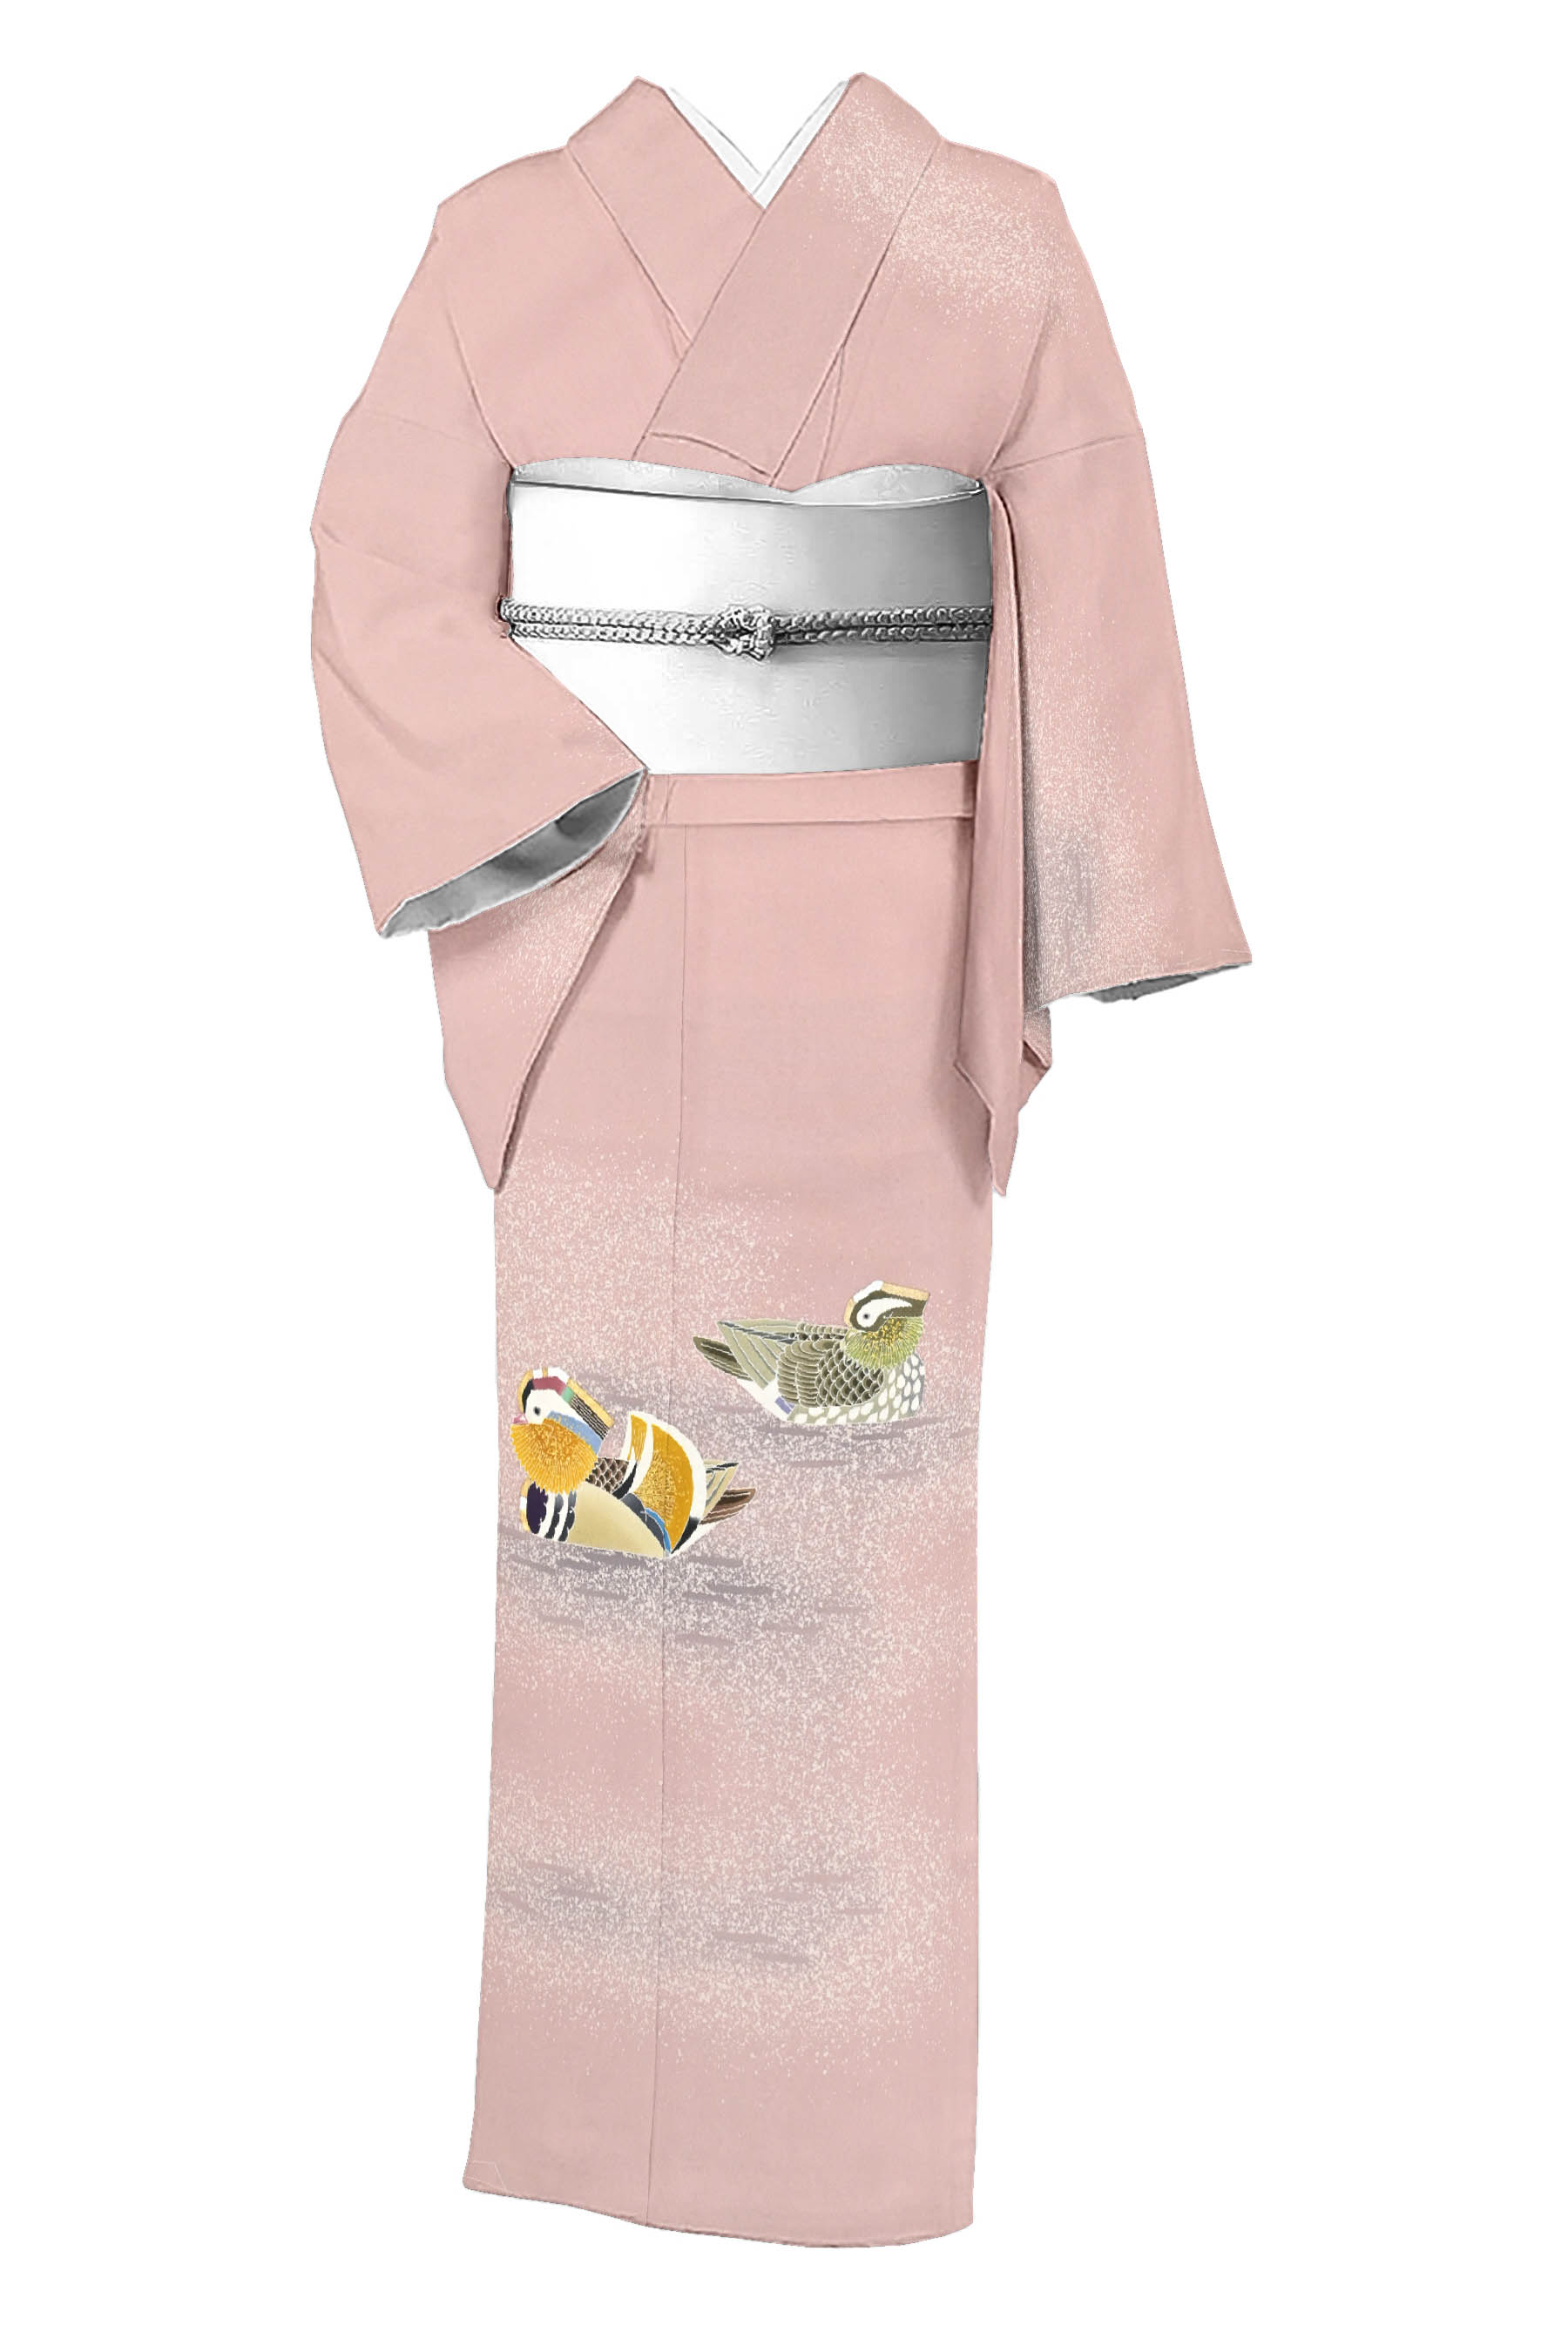 羽田登喜男の着物・帯の一覧|京都きもの市場【日本最大級の着物通販